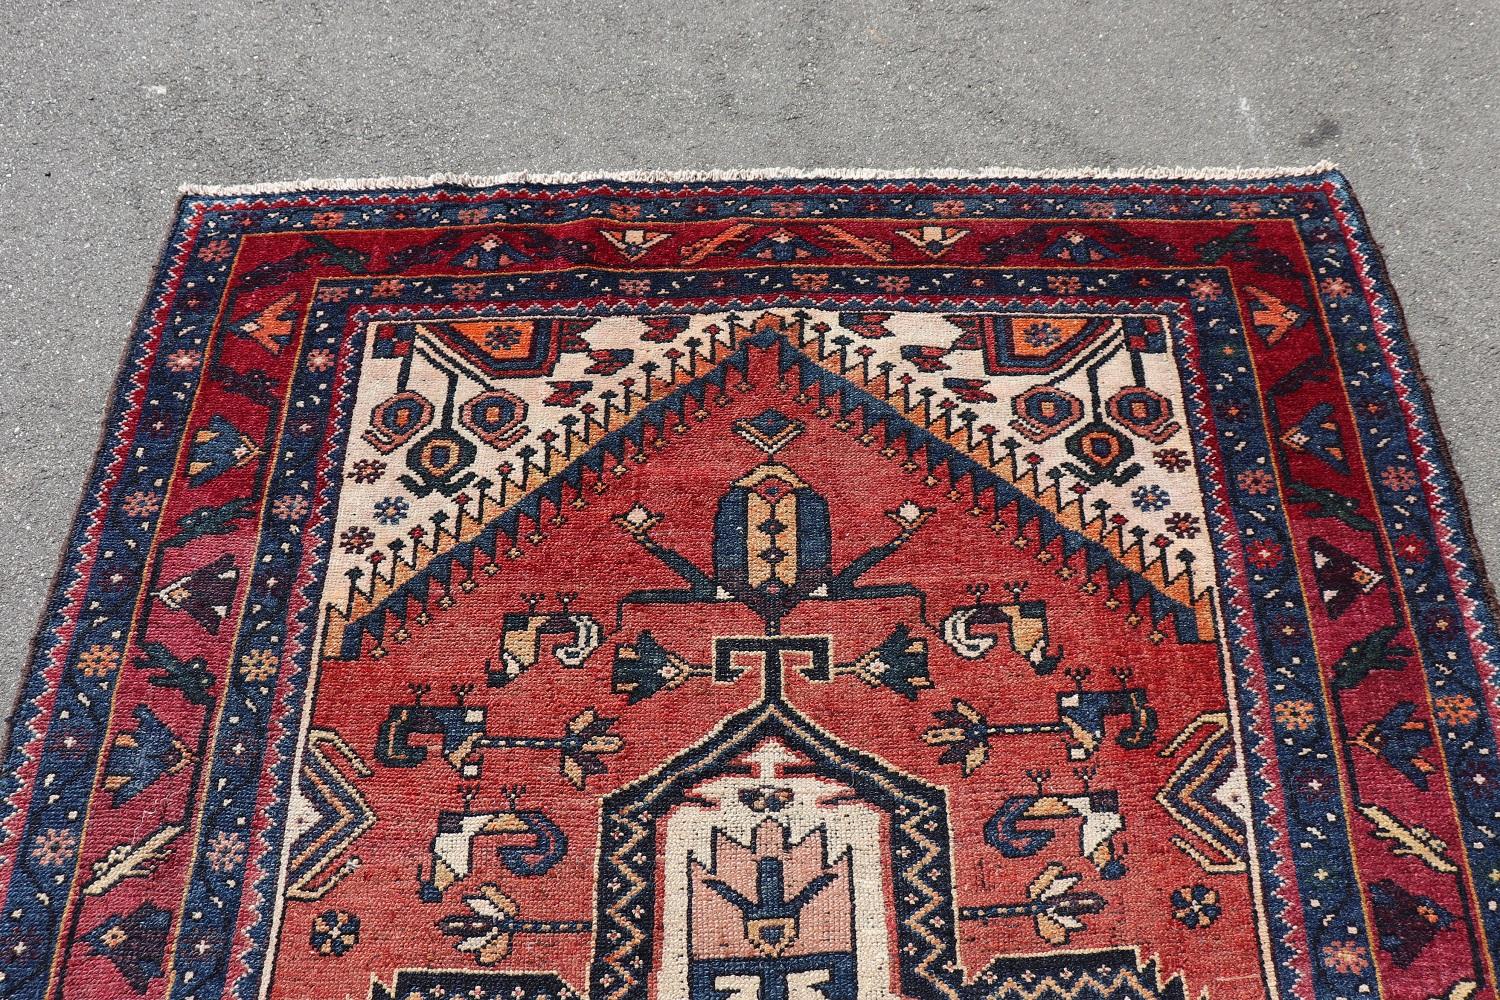 Belle pièce du 20ème siècle ( 1930s circa)  tapis caucasien kazak fait à la main en laine. Ce fantastique tapis est dans la couleur principale rouge avec un motif de médaillons centraux avec des décorations géométriques. Utilisé, bonnes